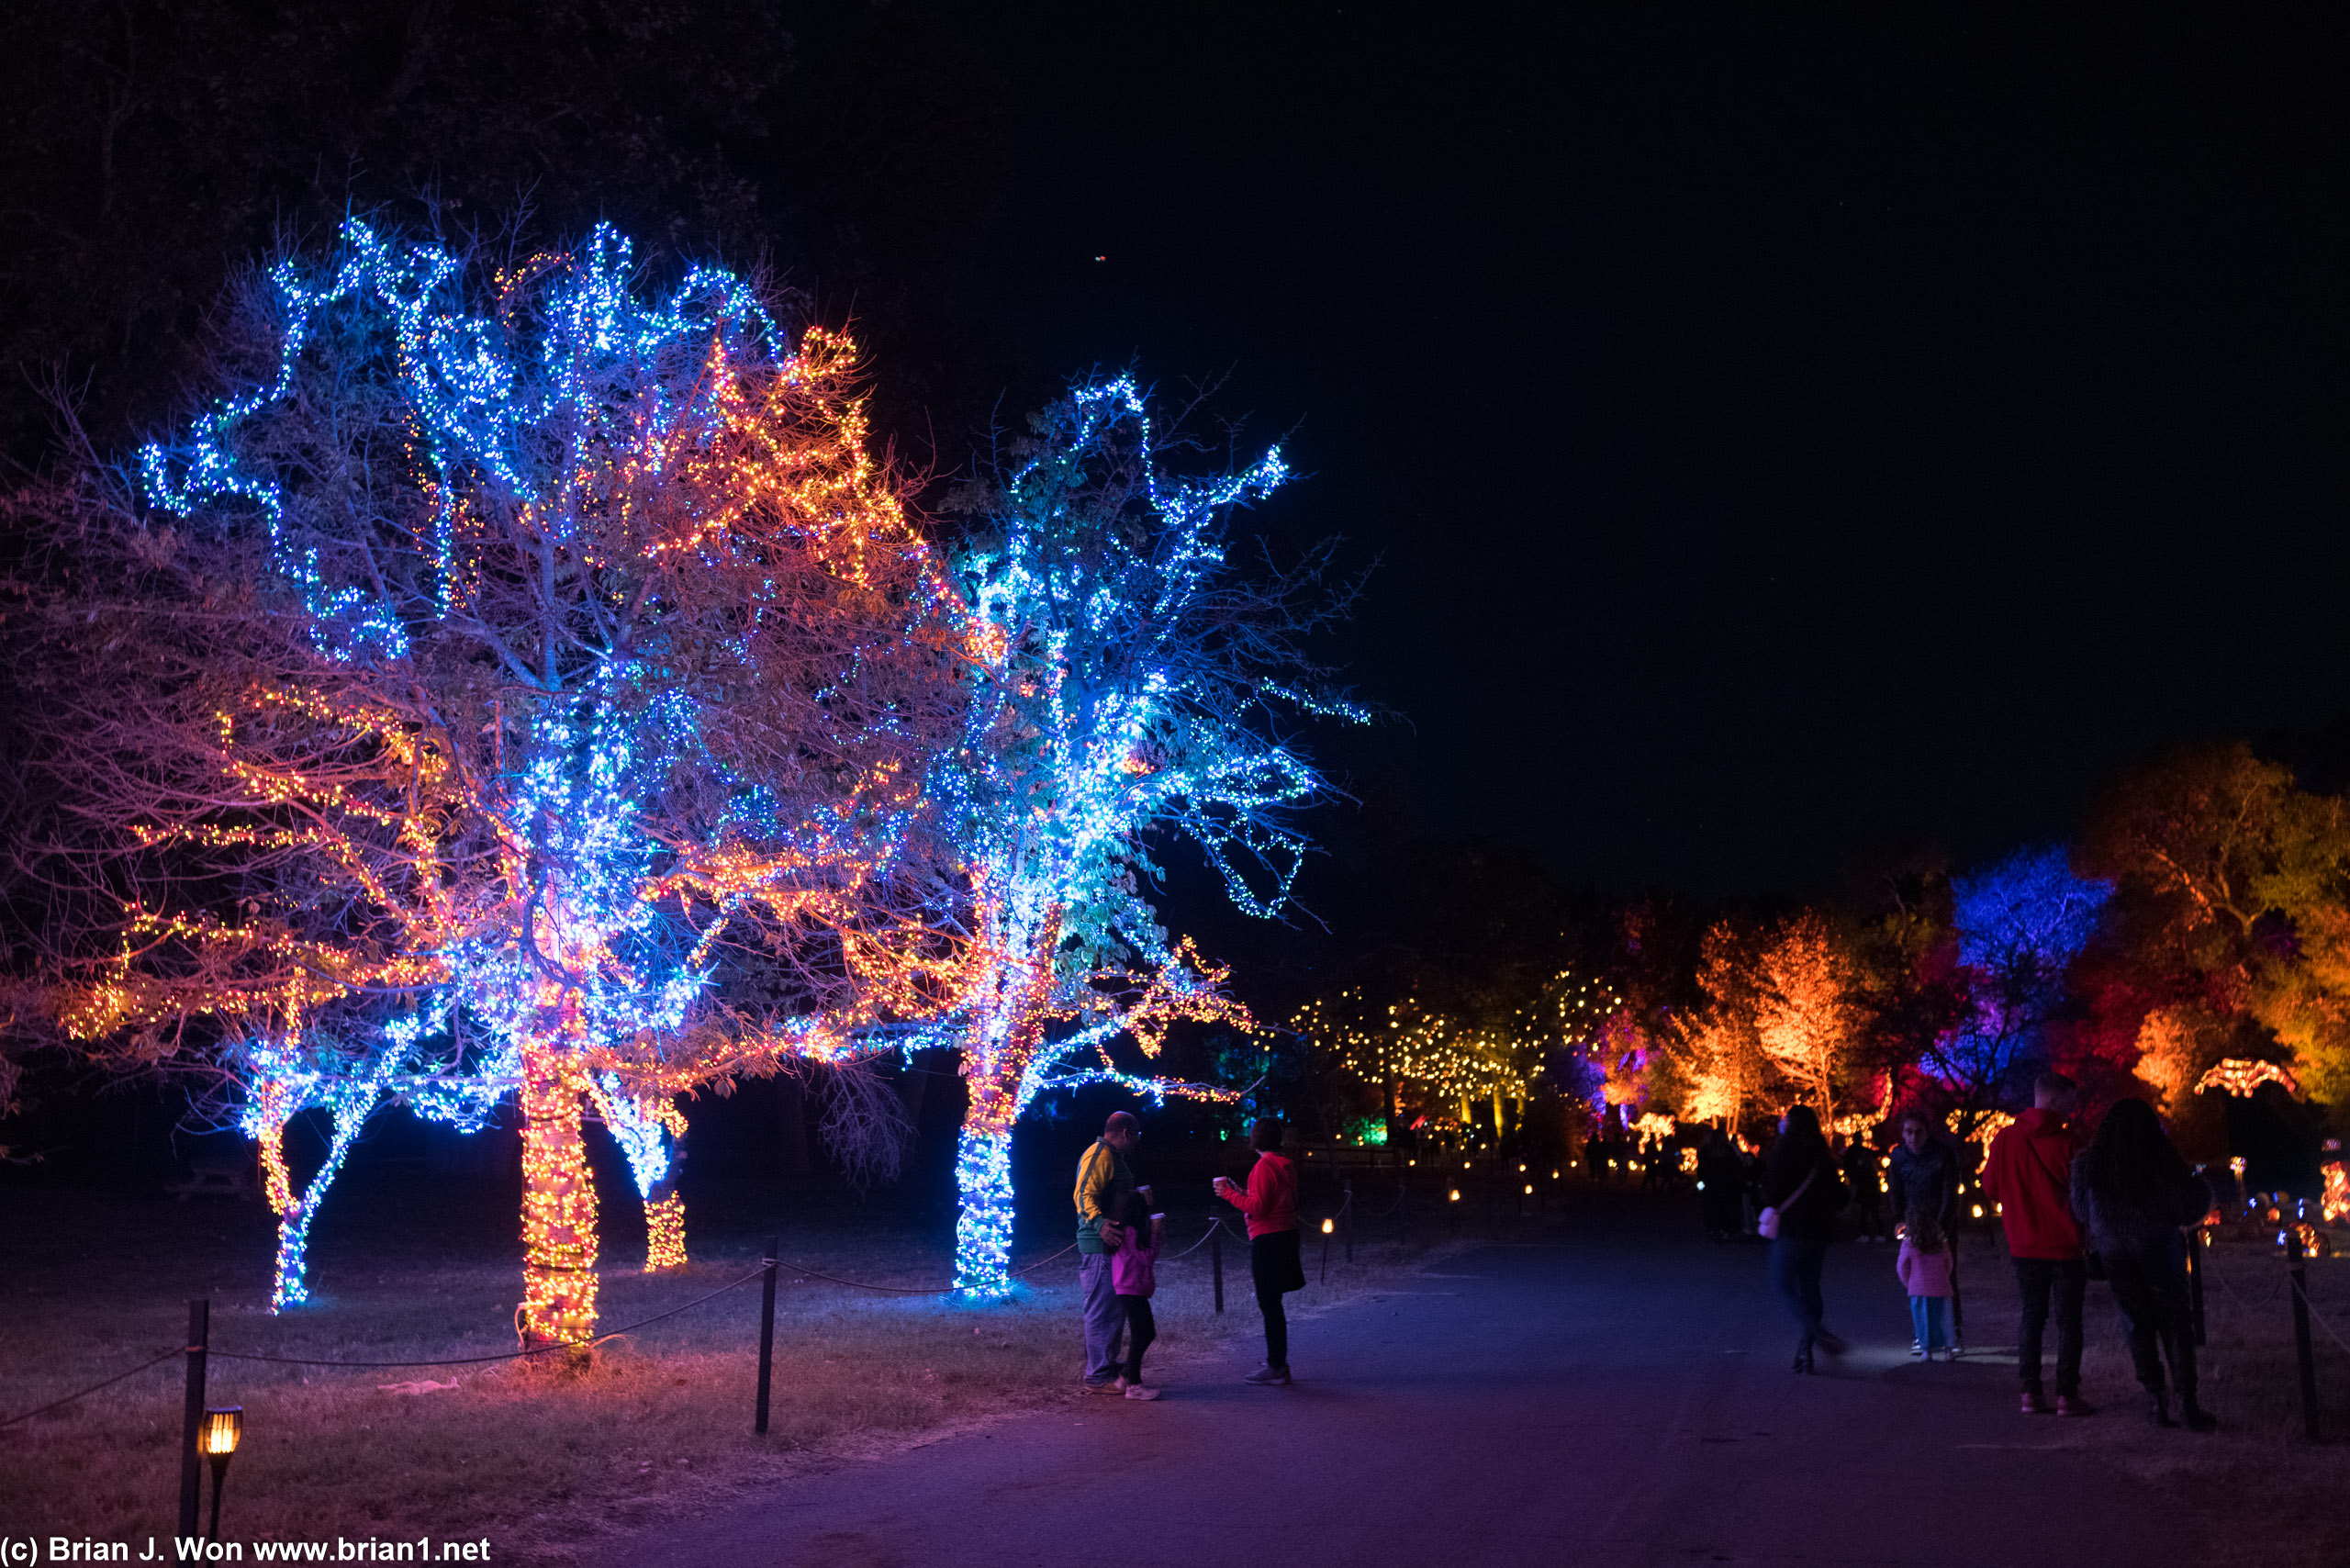 A few lit-up trees.